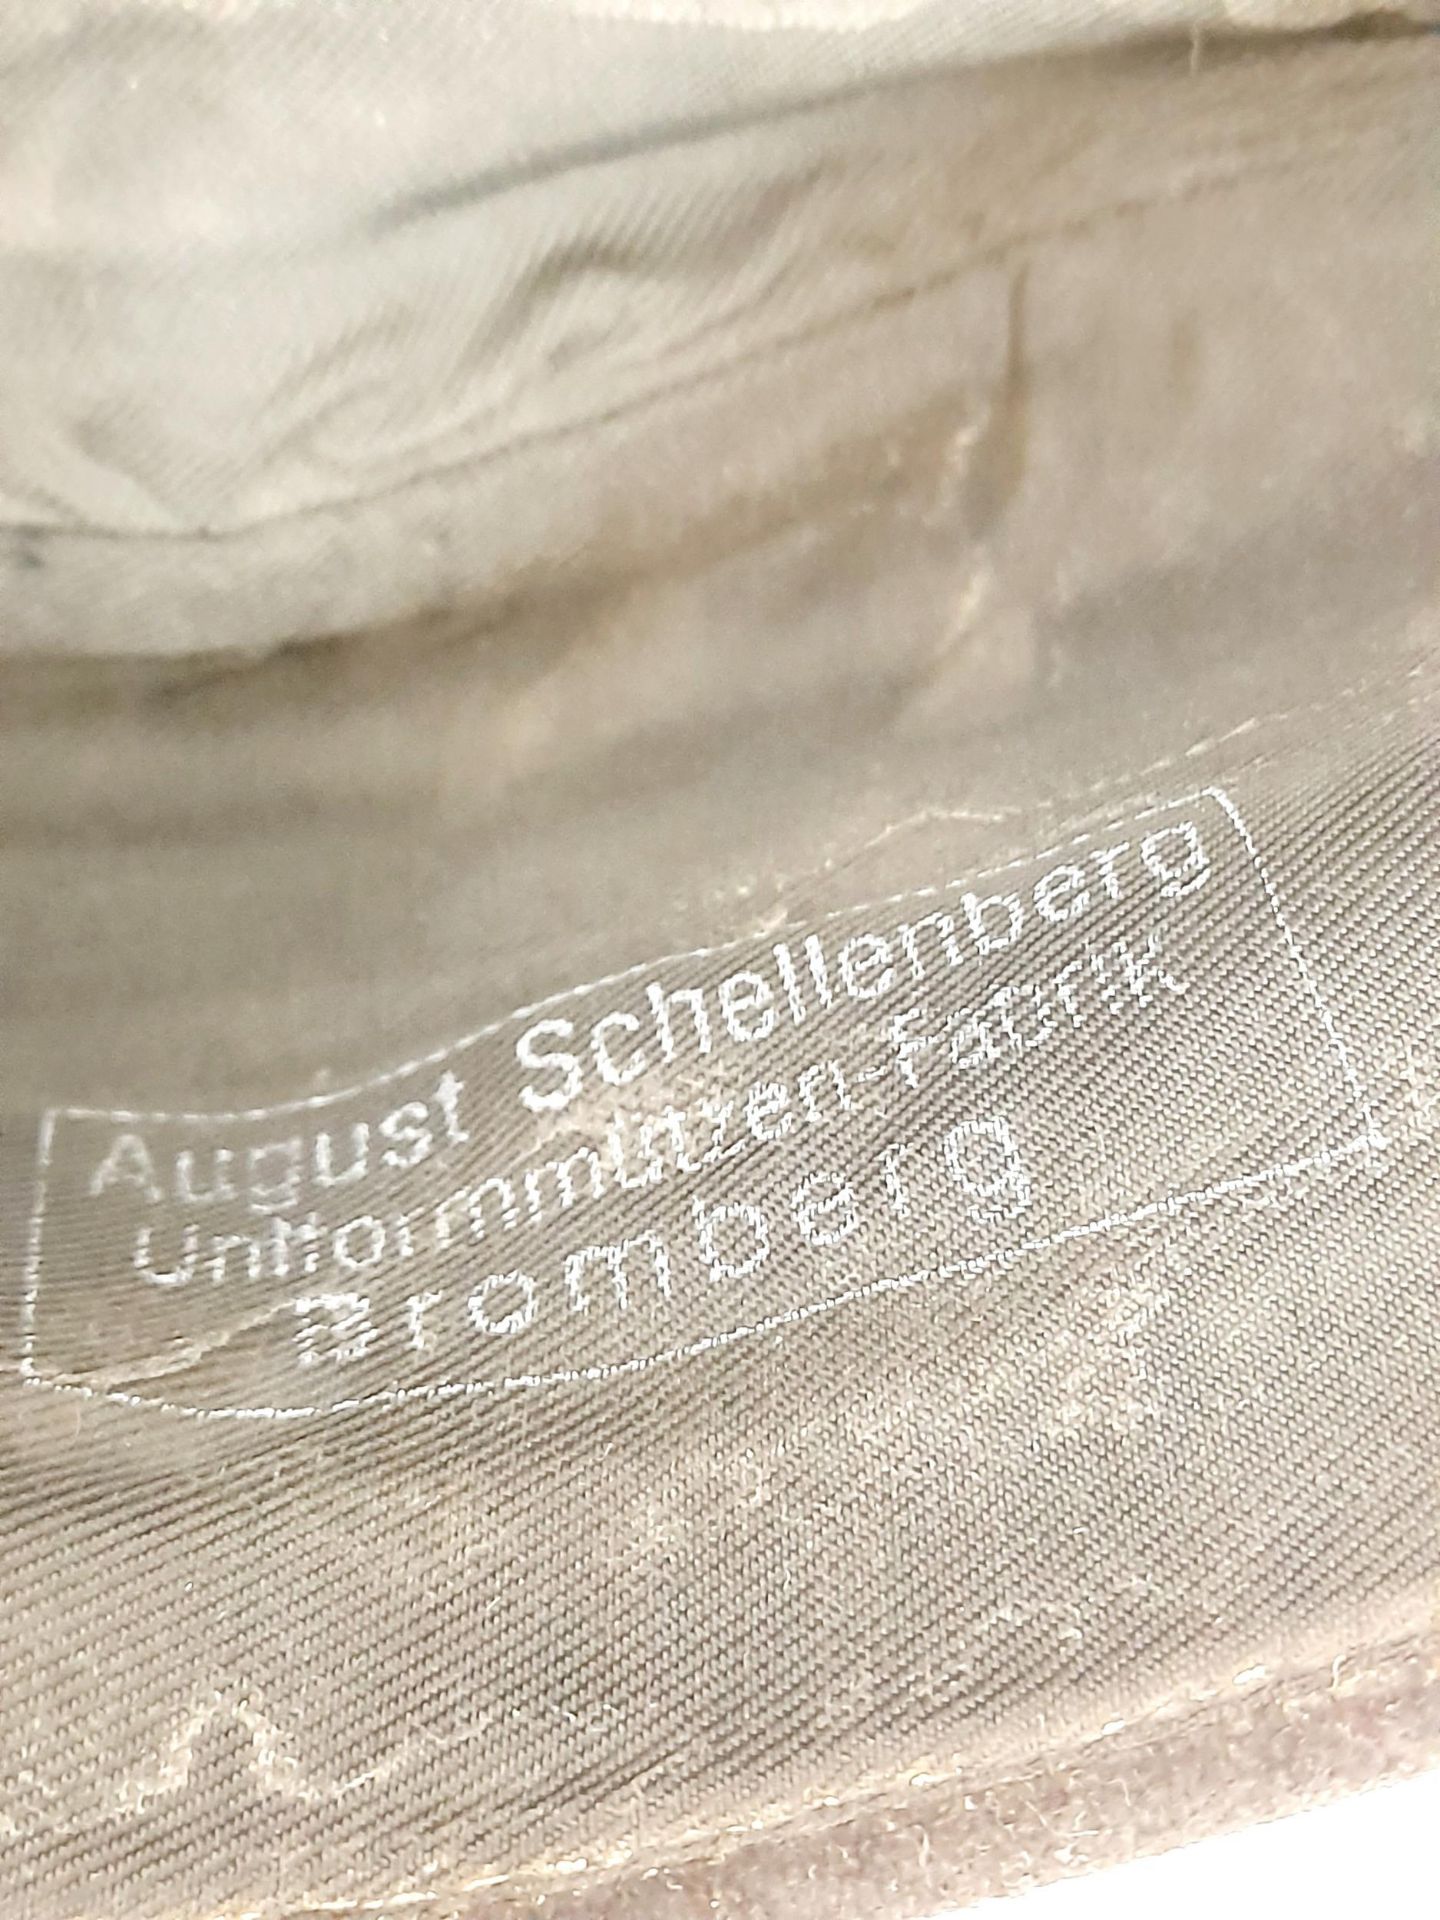 WW2 German Panzer Crew (pink soutache) Overseas Side Cap. Makers stamped “August Schellenberg” - Image 6 of 7